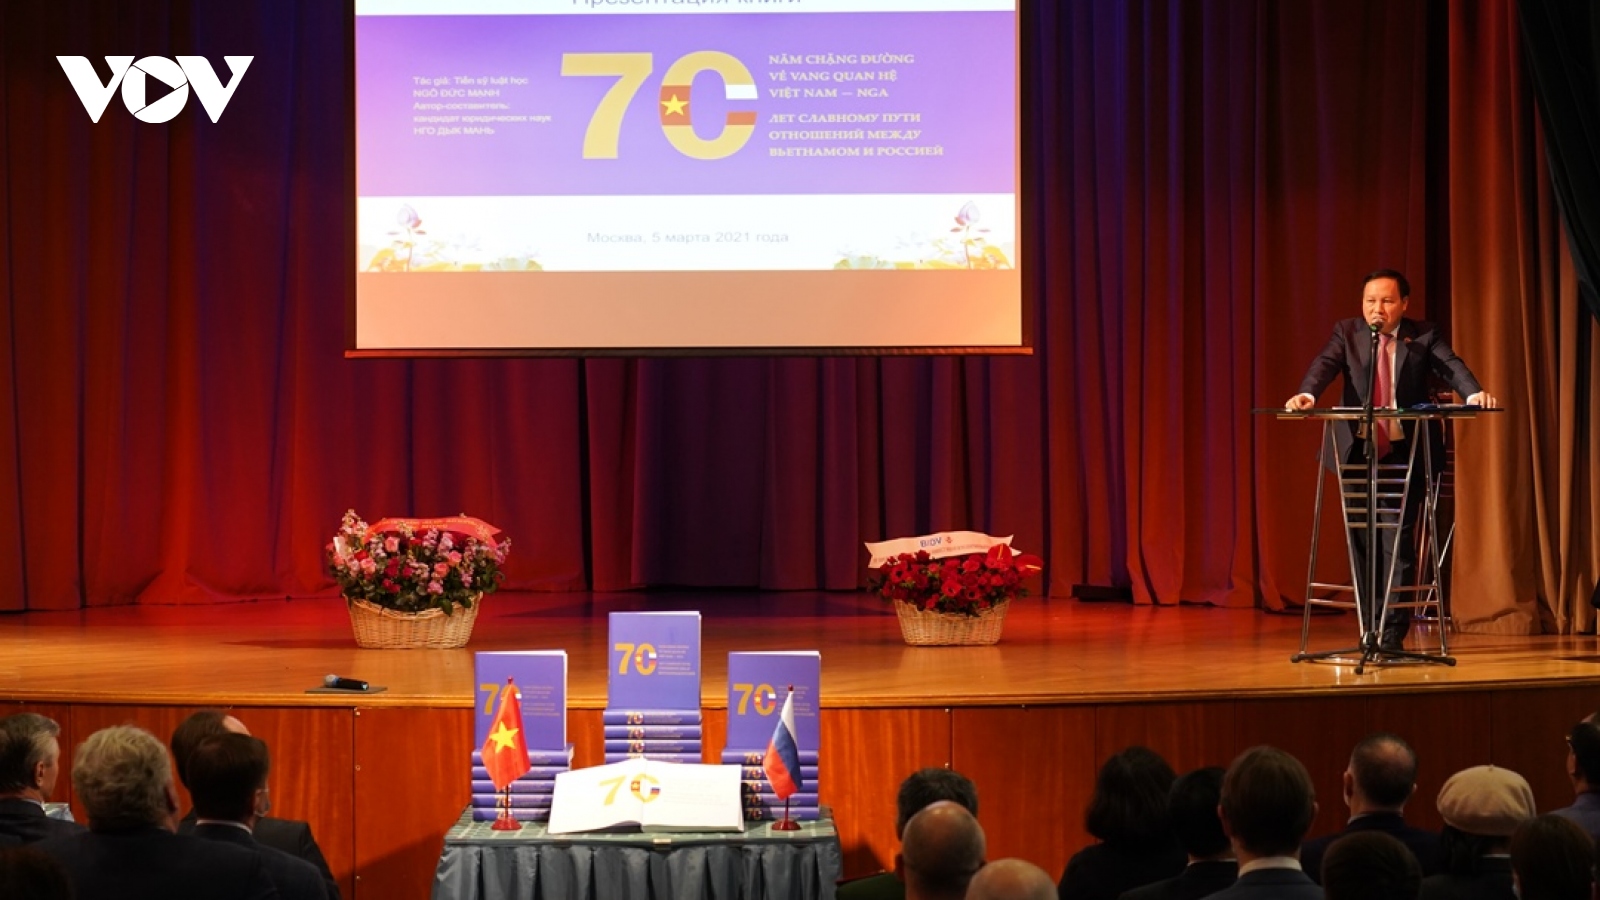 Ra mắt cuốn sách “70 năm chặng đường vẻ vang quan hệ Việt Nam-Nga”